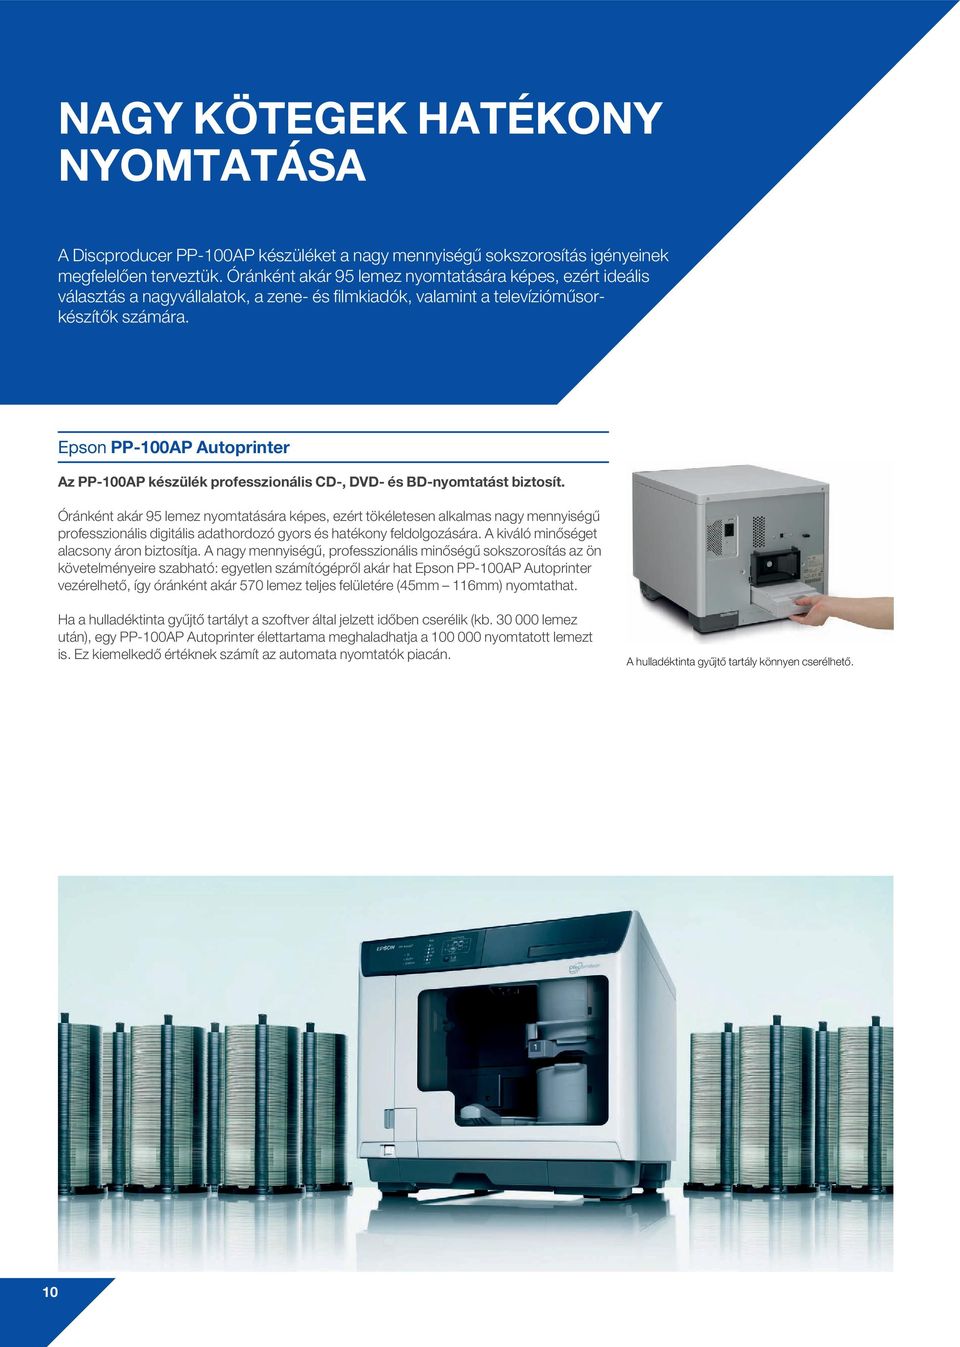 Epson PP-100AP Autoprinter Az PP-100AP készülék professzionális CD-, DVD- és BD-nyomtatást biztosít.